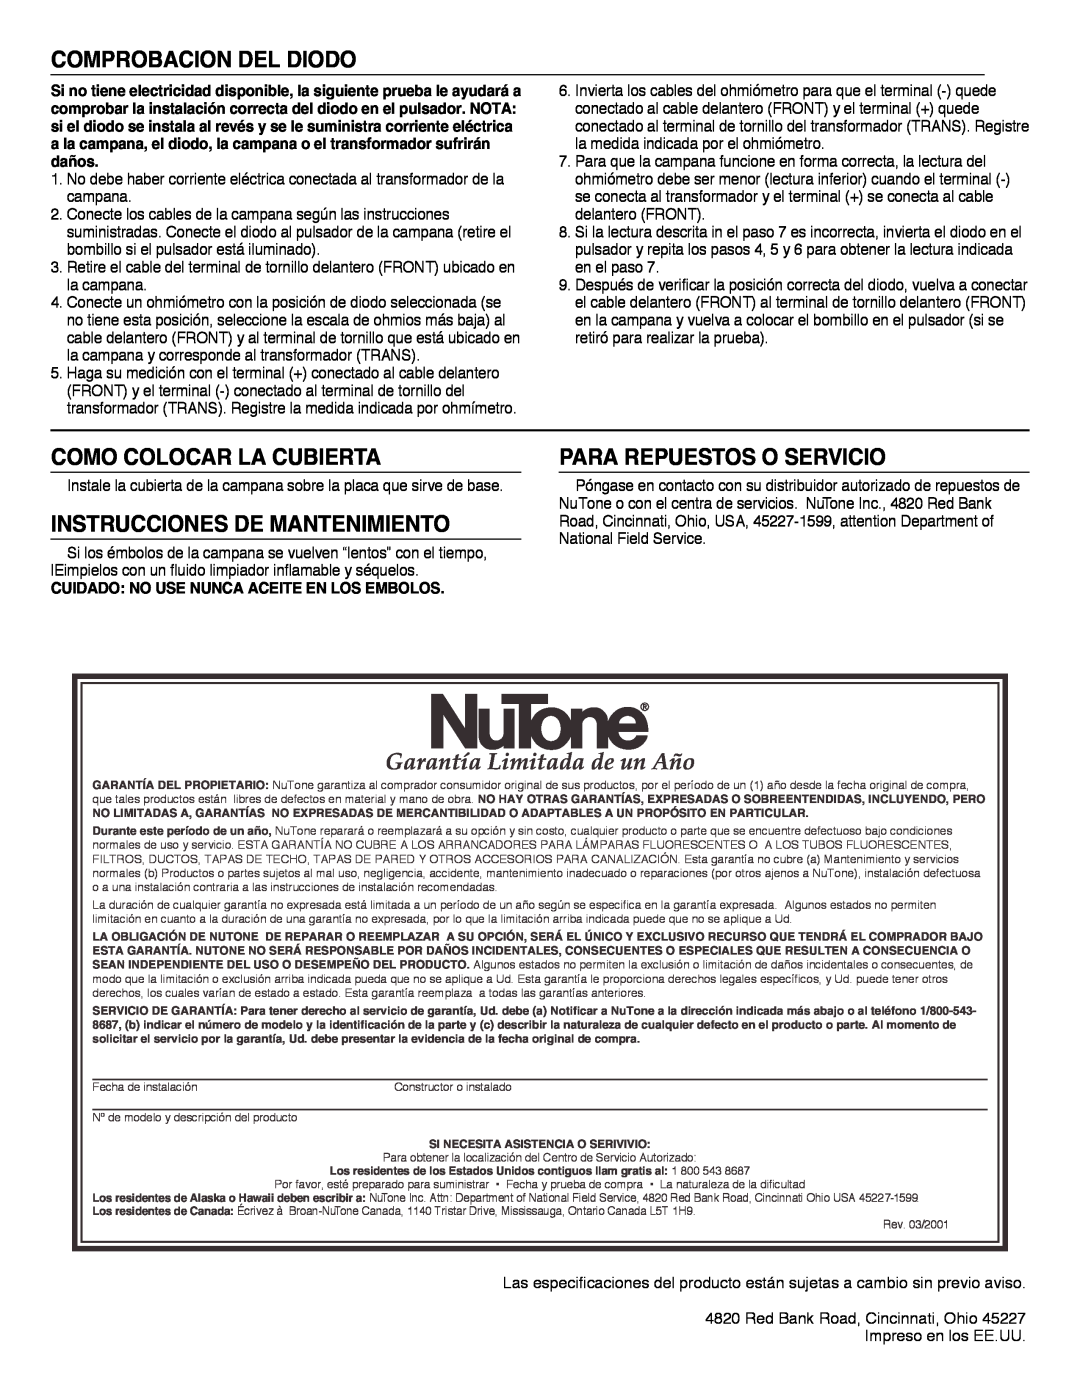 NuTone LA-165 Garantía Limitada de un Año, Comprobacion Del Diodo, Como Colocar La Cubierta, Para Repuestos O Servicio 